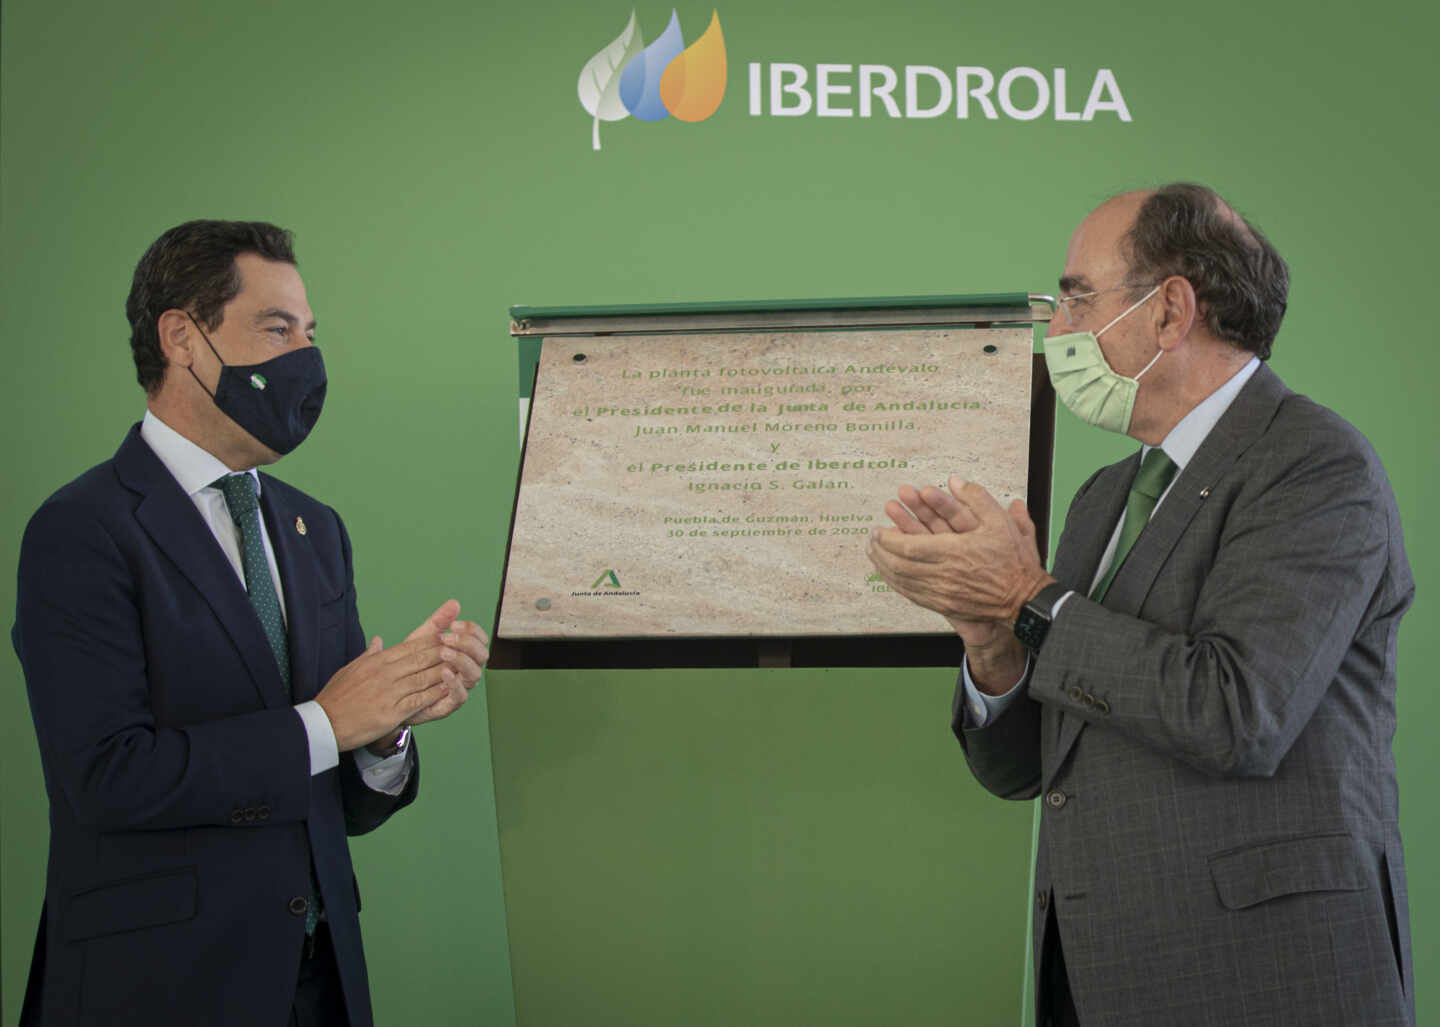 Iberdrola prepara otra 'megaplanta' de hidrógeno verde en España por 1.000 millones